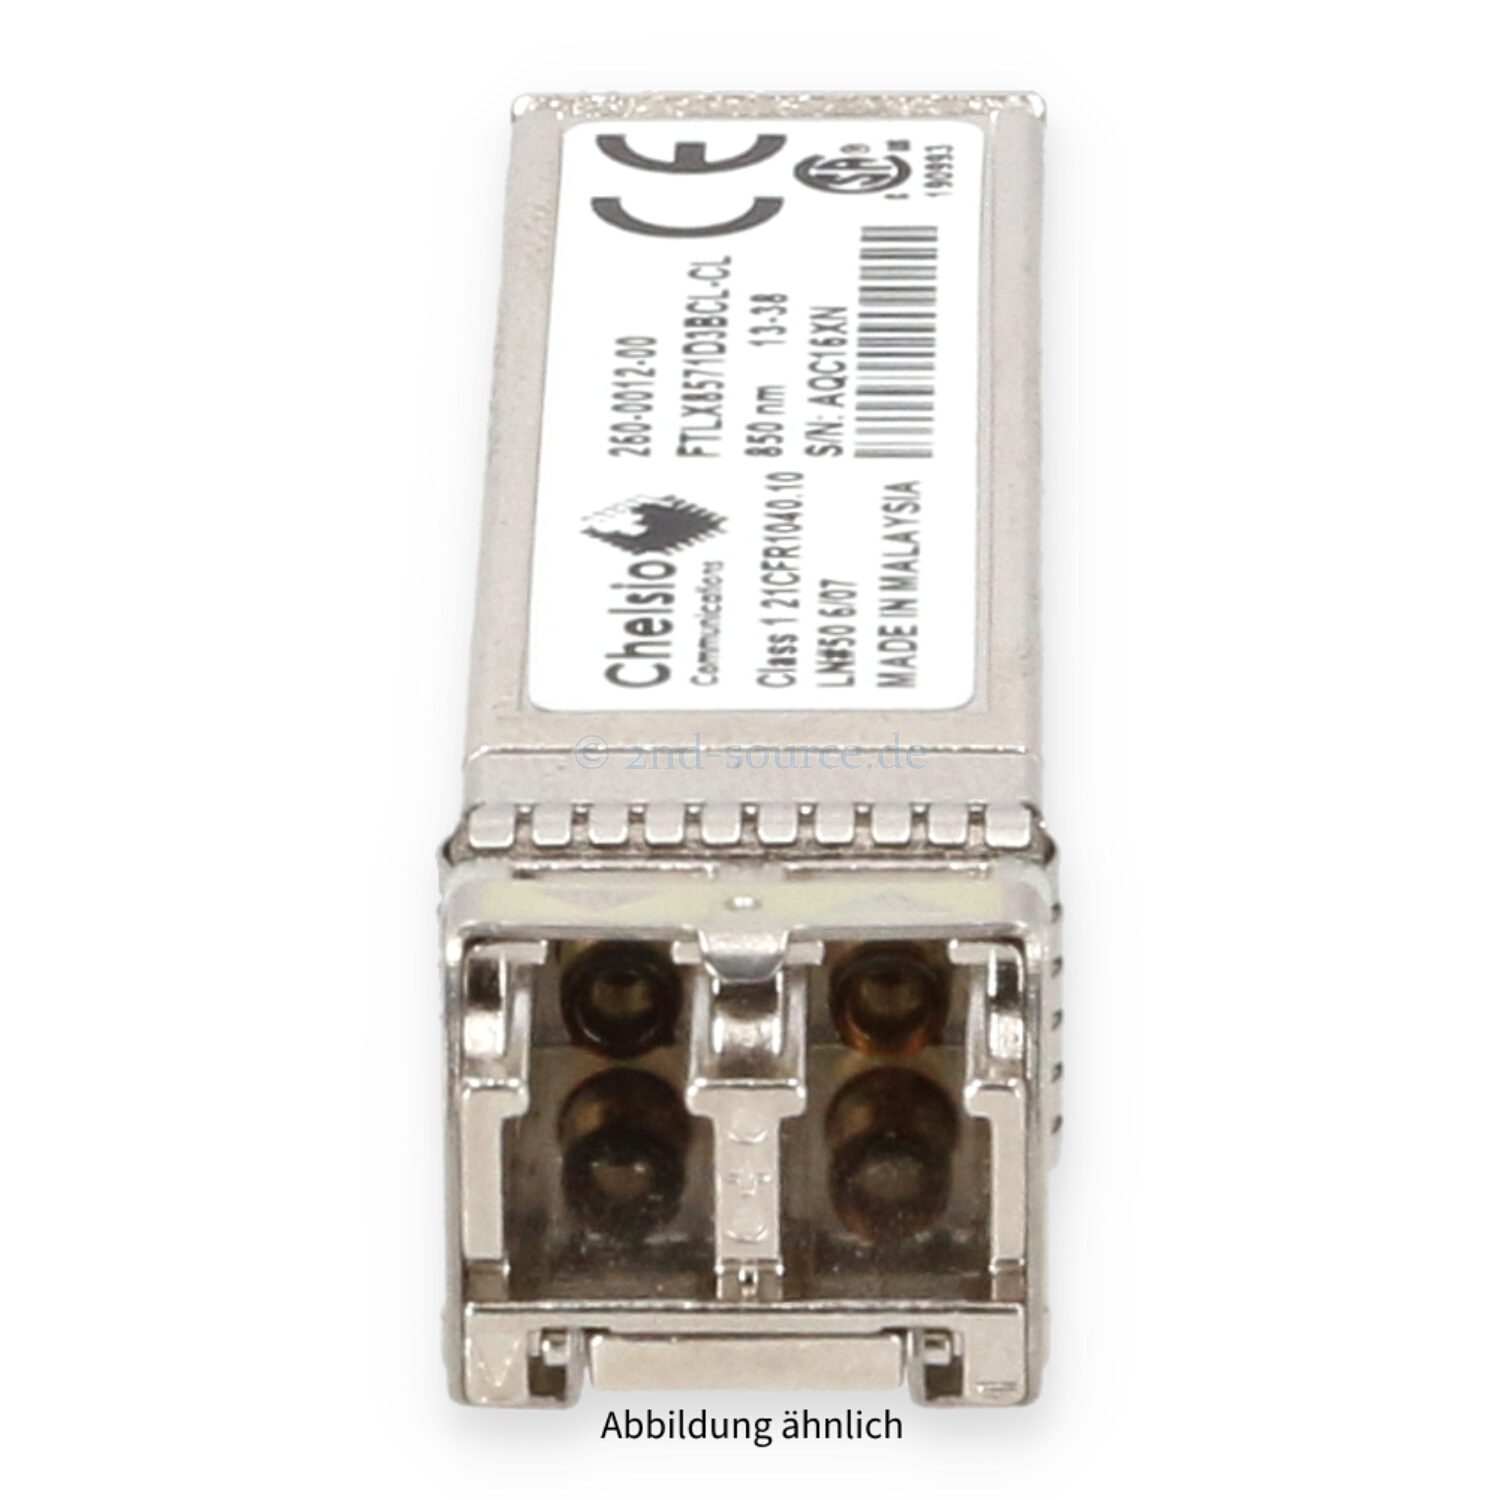 Chelsio 10GB Shortwave FC SFP+ Transceiver Module FTLX8571D3BCL-CL